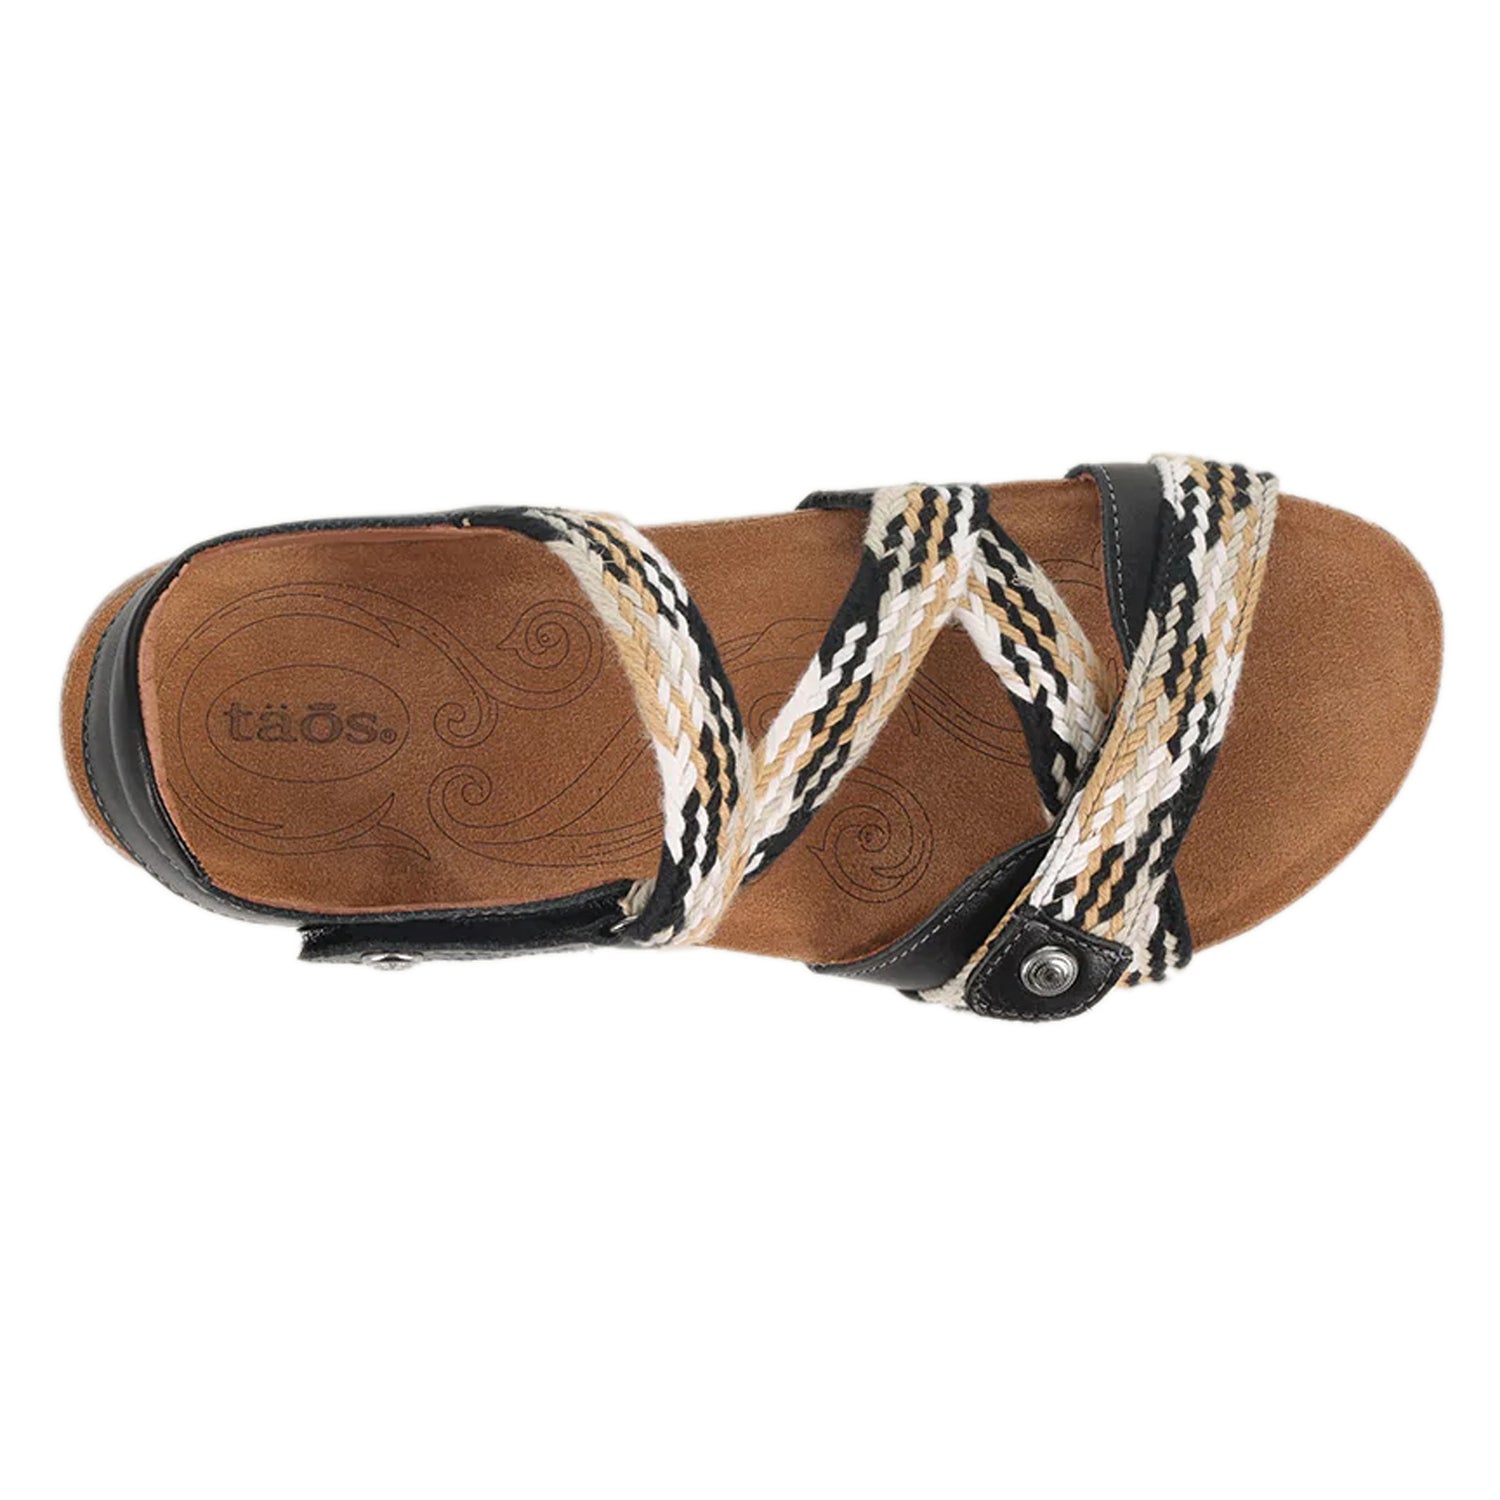 Peltz Shoes  Women's Taos Trulie Sandal Black Multi TLE-1398-BLKM